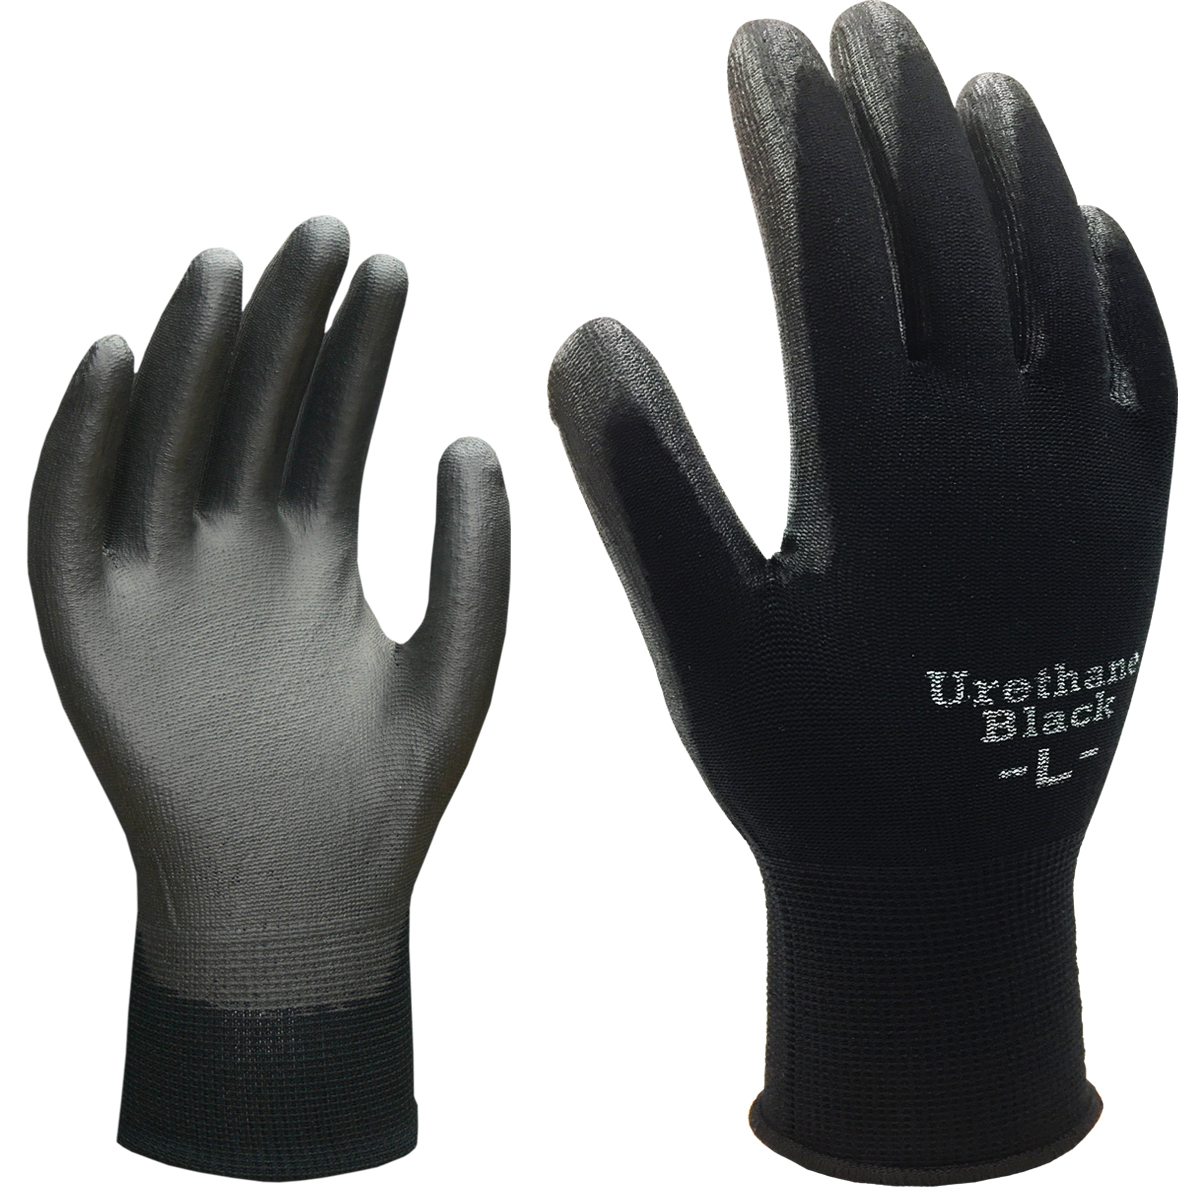 ウレタンブラック 3双組 AG777 | ACE 作業用革手袋・作業用手袋のエース